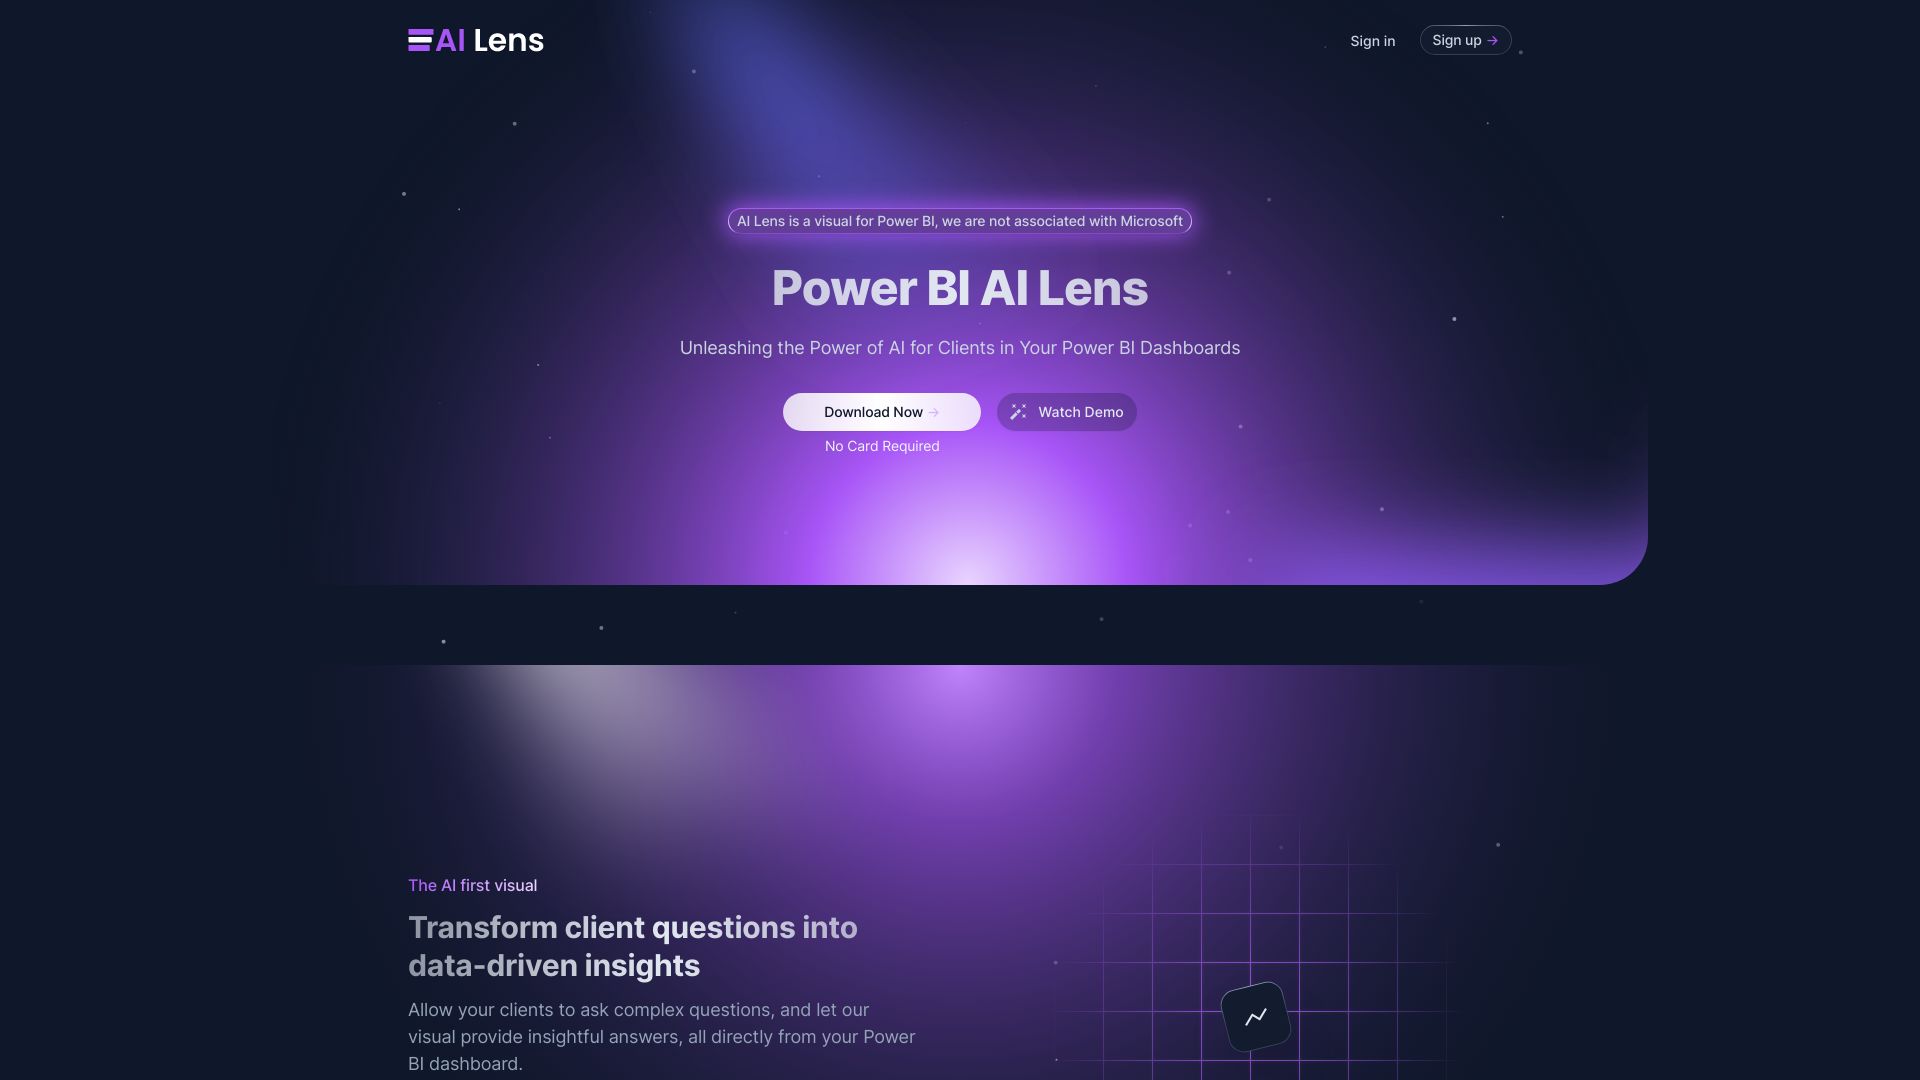 Power BI AI Lens